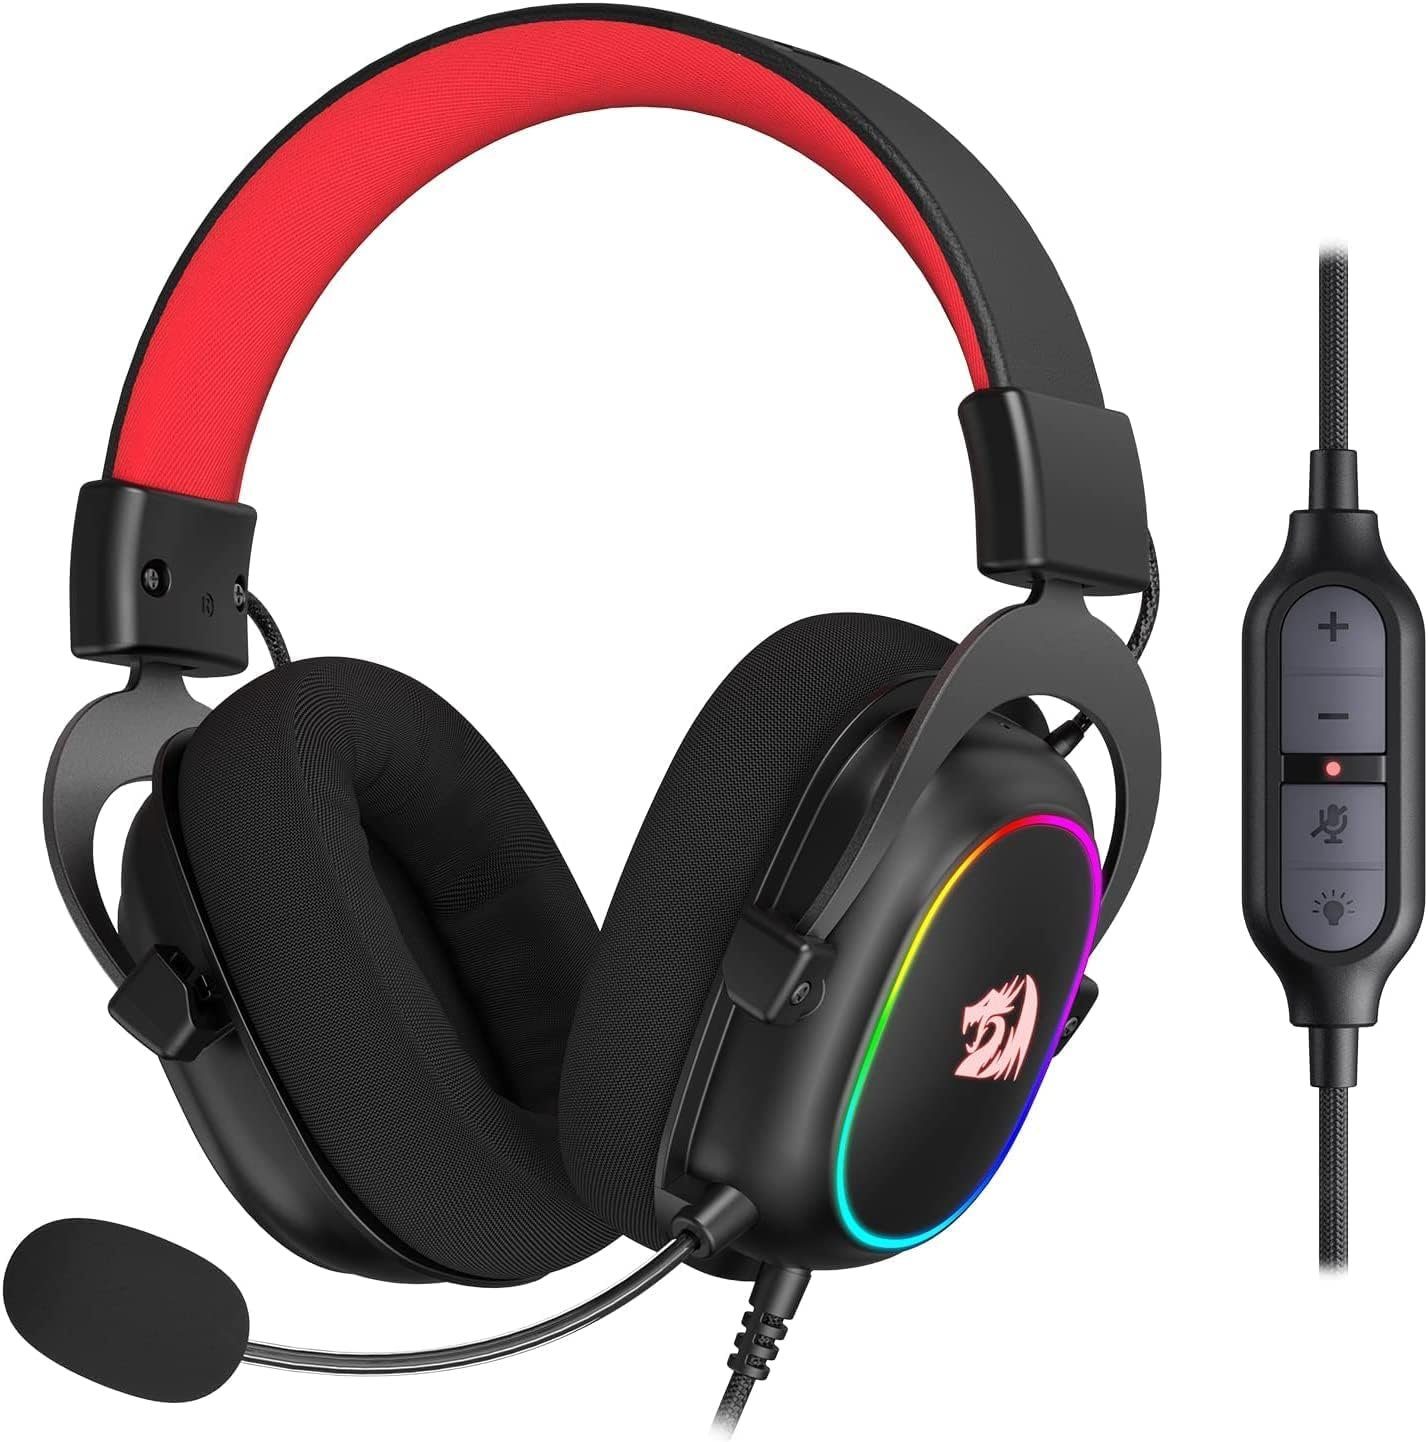 Redragon Zeus-X Gaming-Headset (53-mm-Treiber, Headset Kabel, Immersionskopfhörer, abnehmbares atmungsaktiver 7.1-Surround-Sound Mikrofon, Wired mit Stoffbezug)